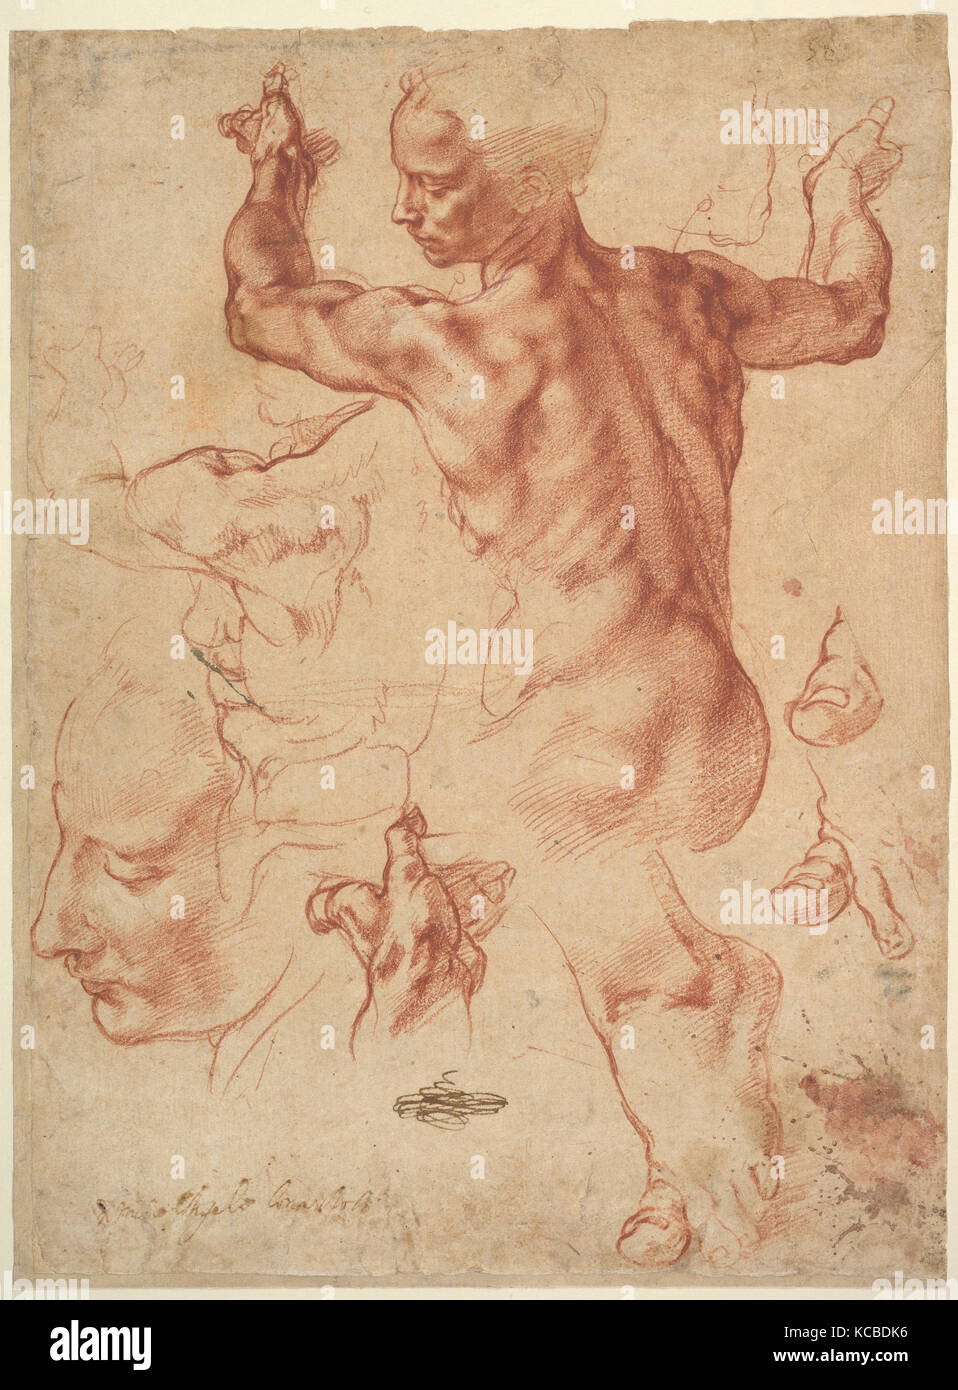 Studien für Guernica (recto); Studien für Guernica und eine kleine Skizze für eine Sitzende Figur (verso), Michelangelo Stockfoto